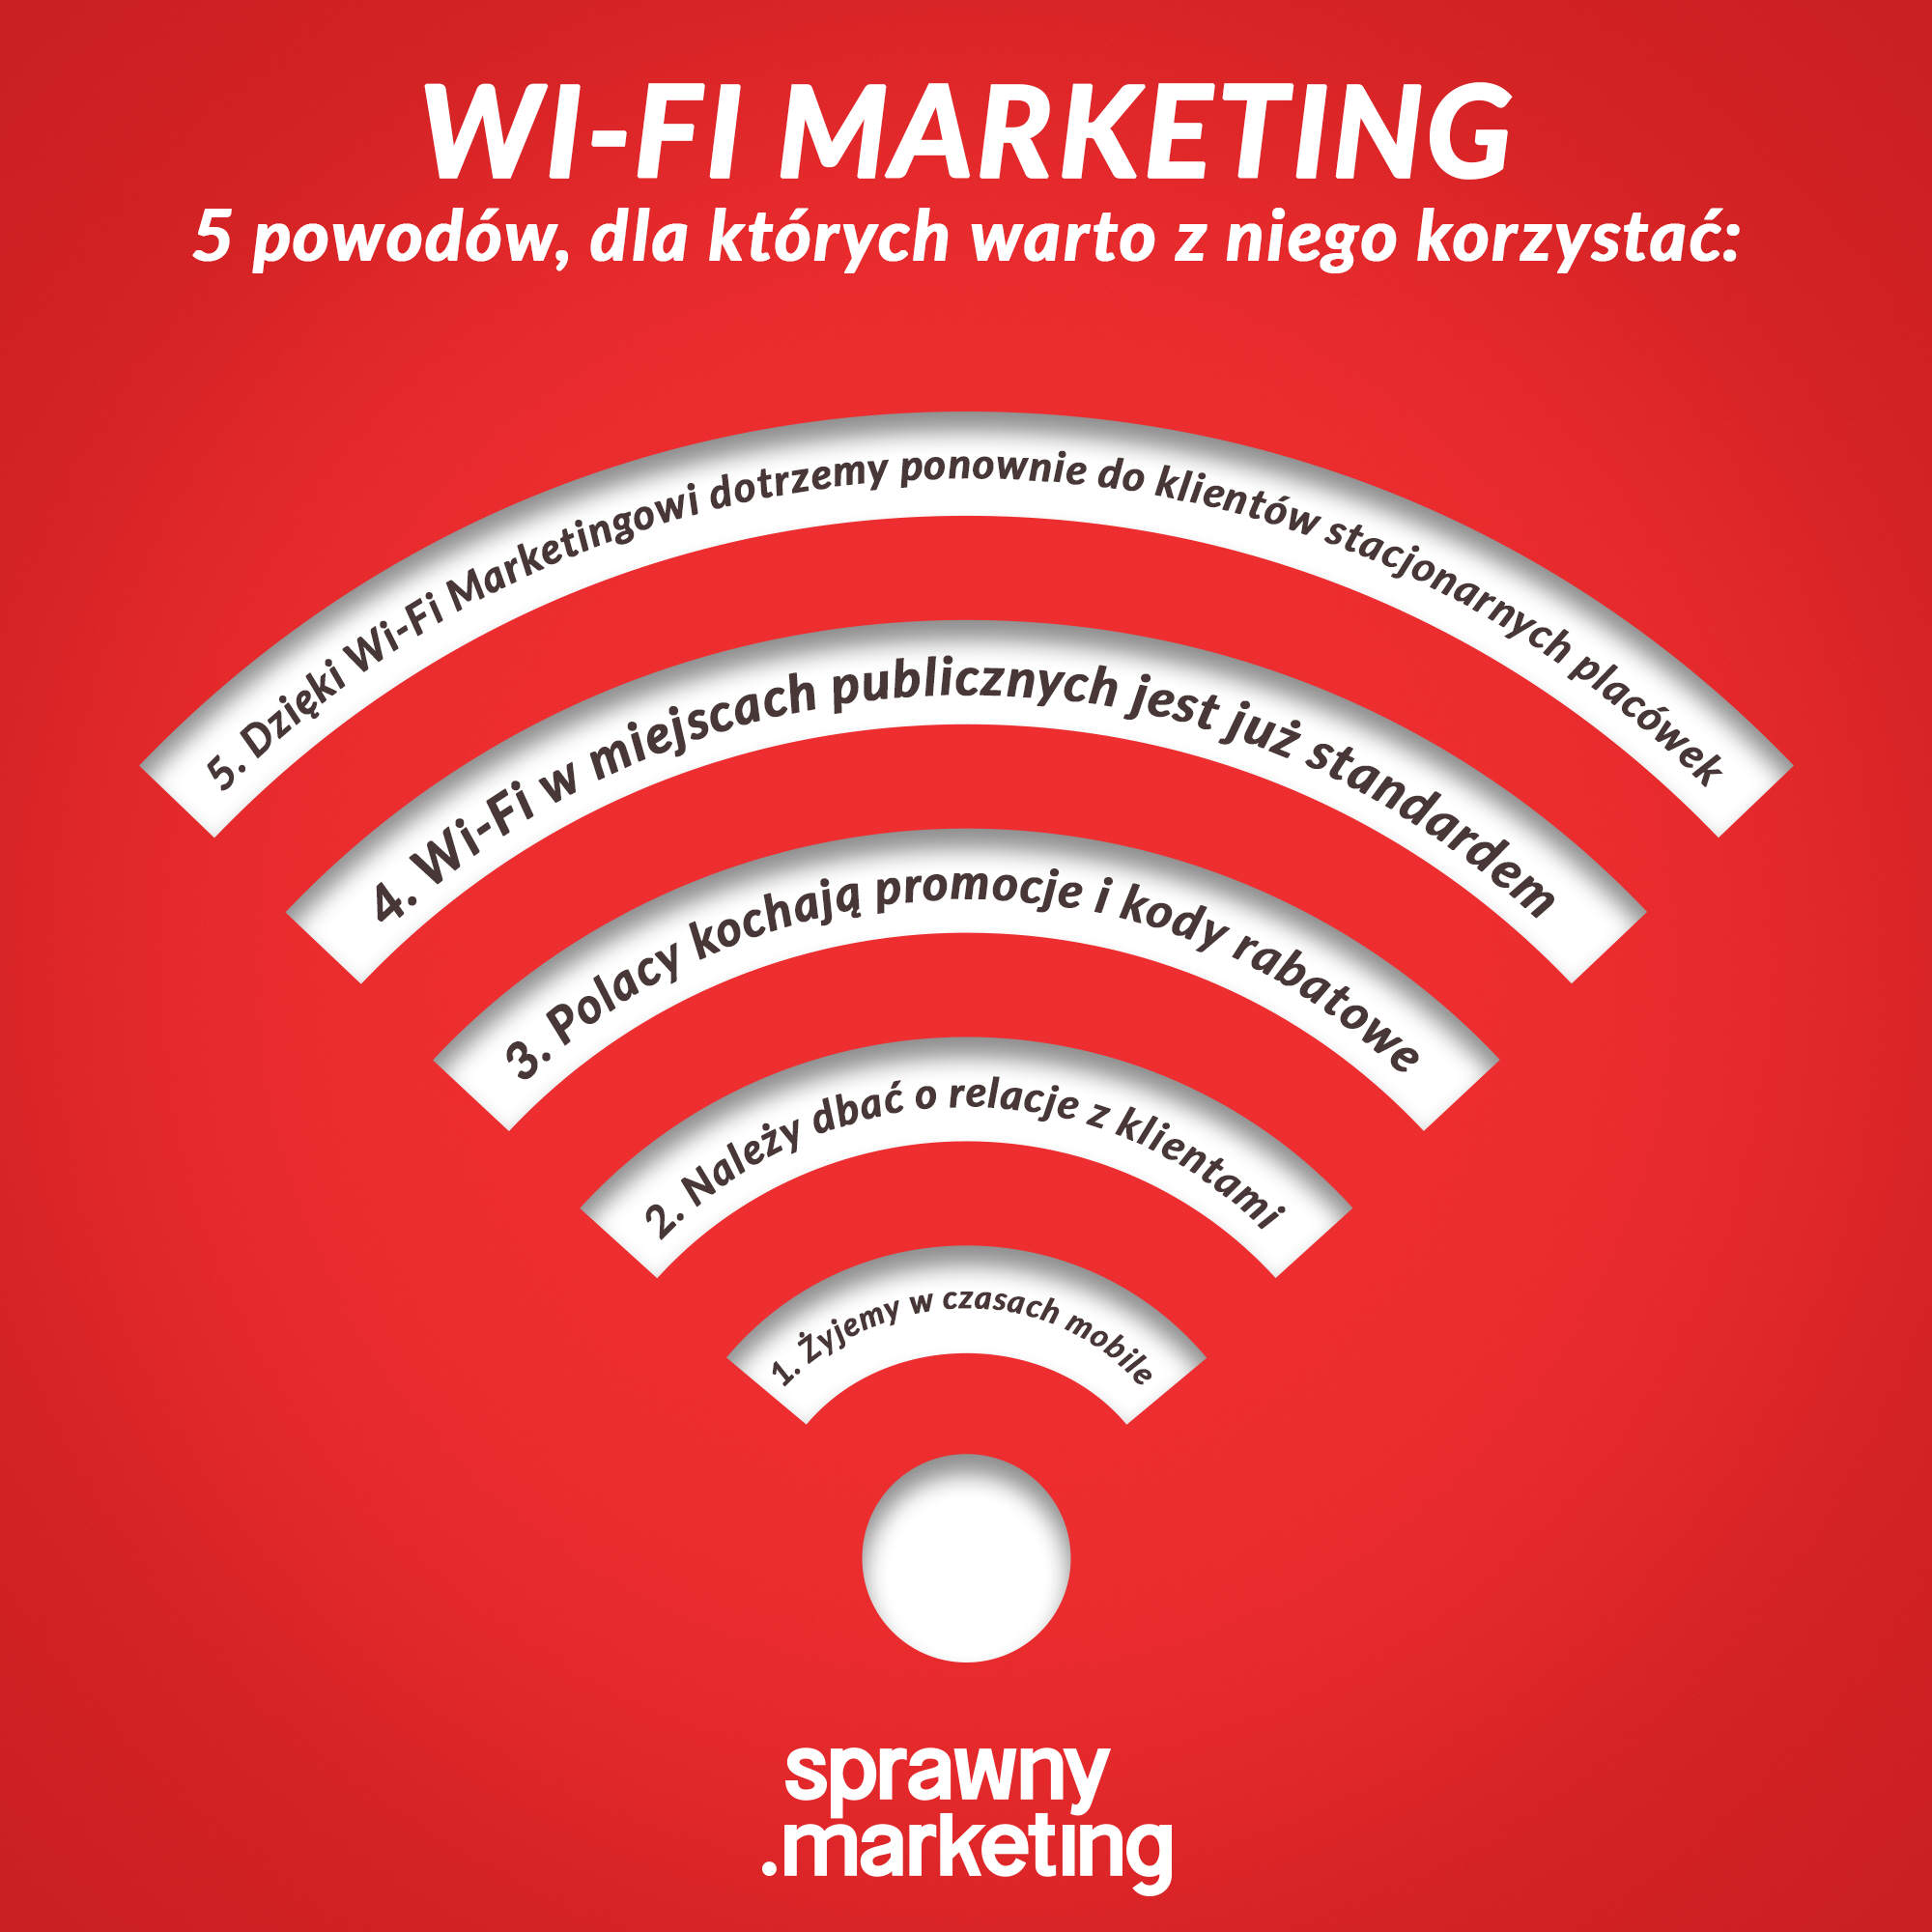 Wifi Marketing